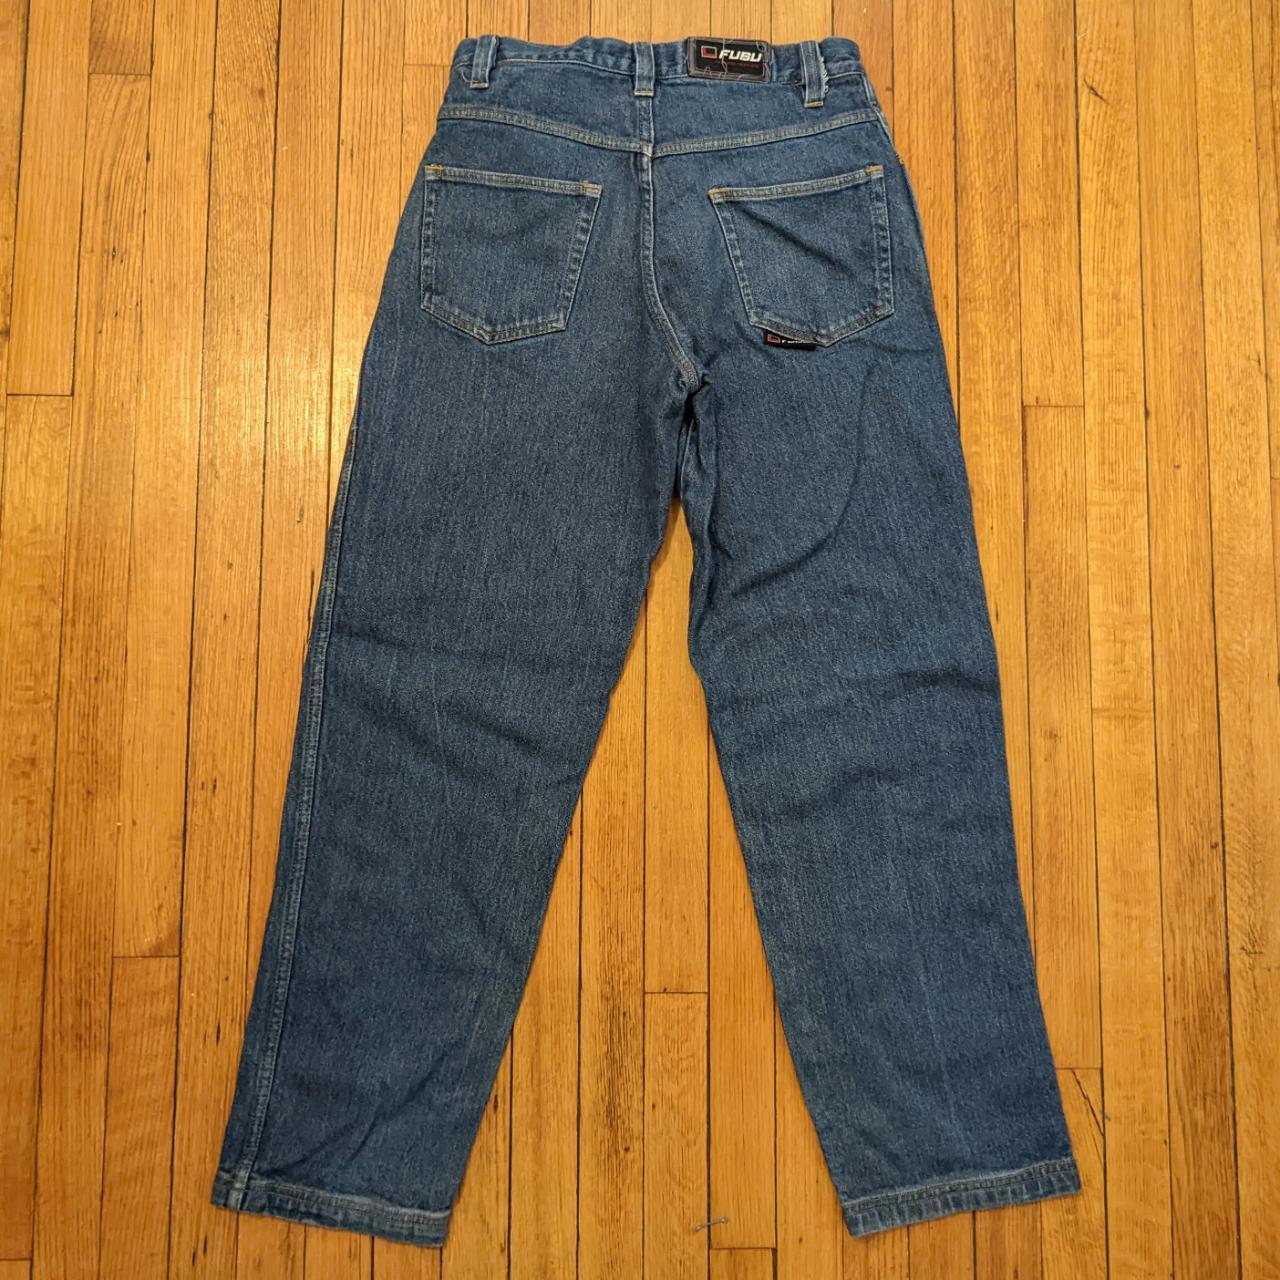 Vintage Fubu baggy jeans size 32 Pair of vintage... - Depop